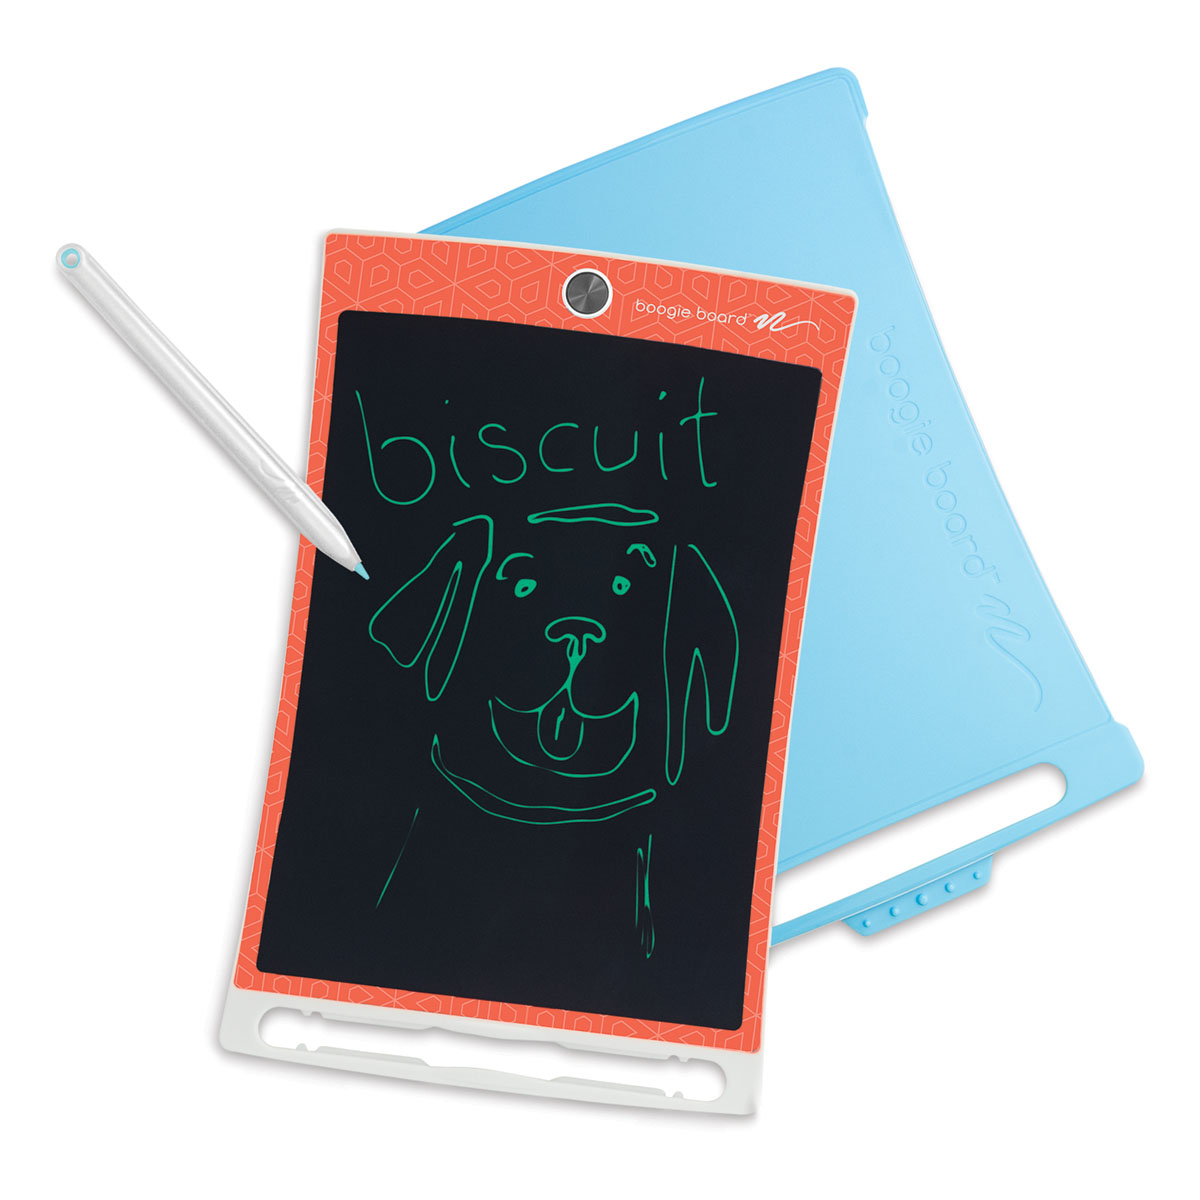 Boogie Board Dash eWriter Kids Drawing Kit